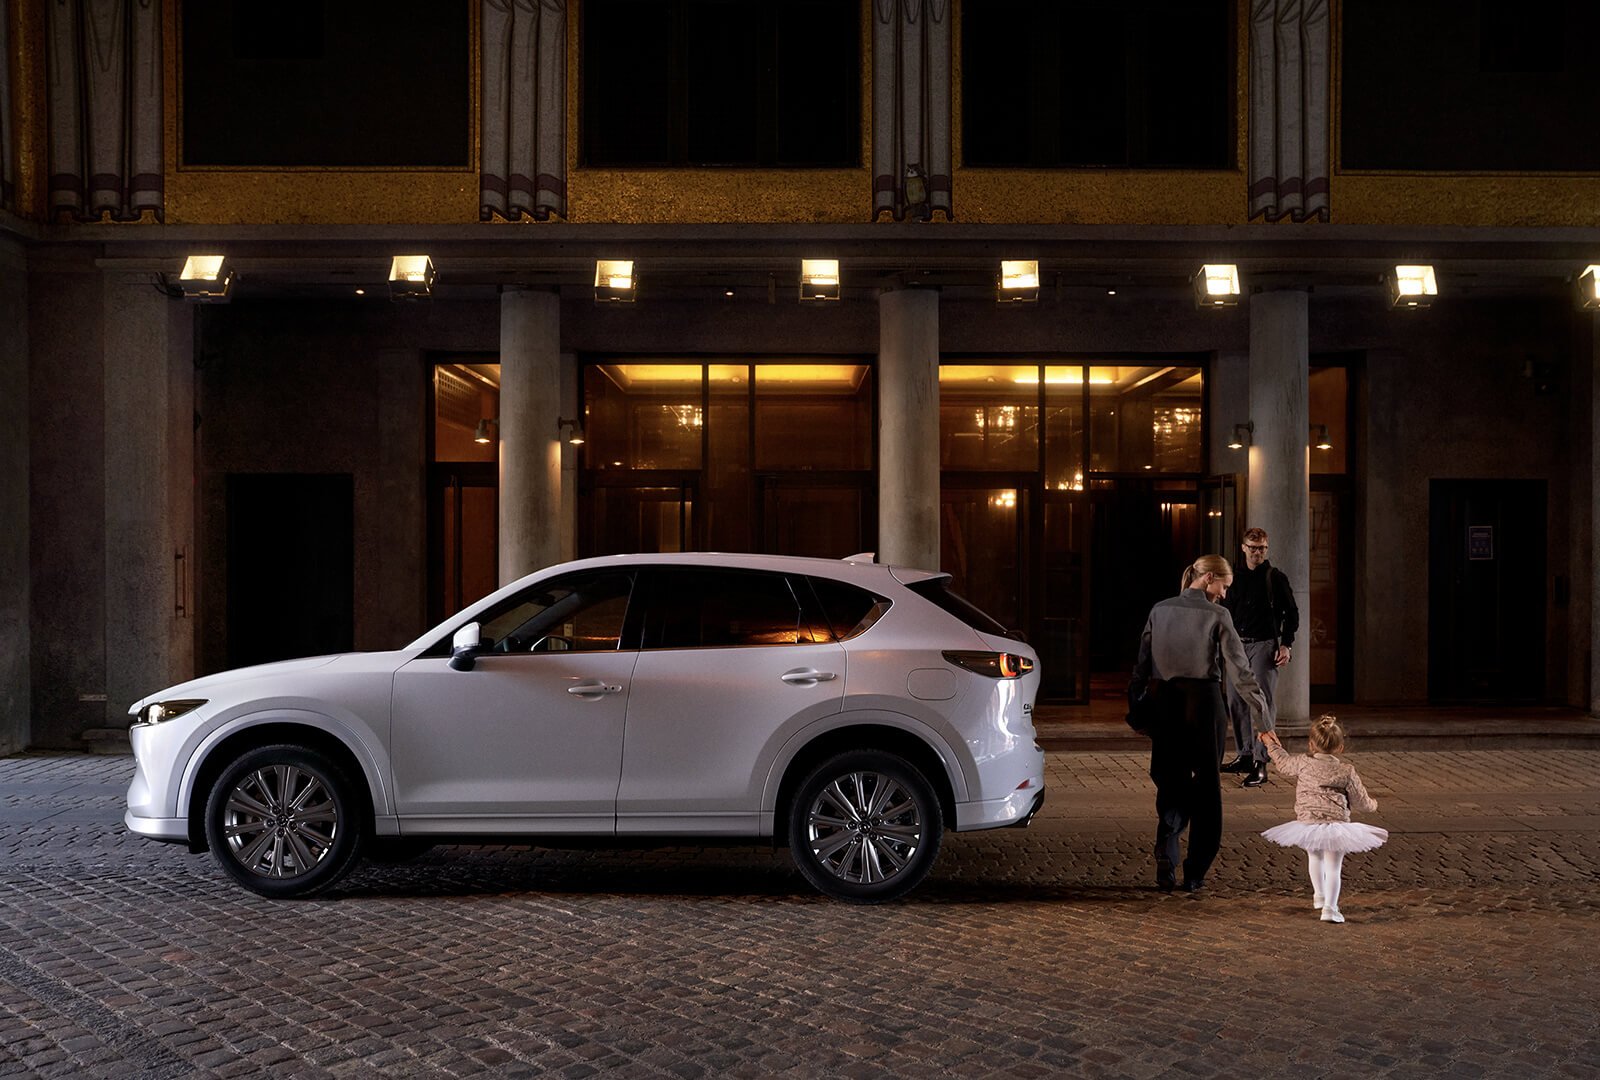 Un Mazda CX-5 blanc stationné, vu de profil, alors qu’une maman accompagne sa fillette en tutu blanc, en passant derrière le véhicule et en se dirigeant vers le papa qui attend devant l’entrée d’un hôtel votre Mazda.